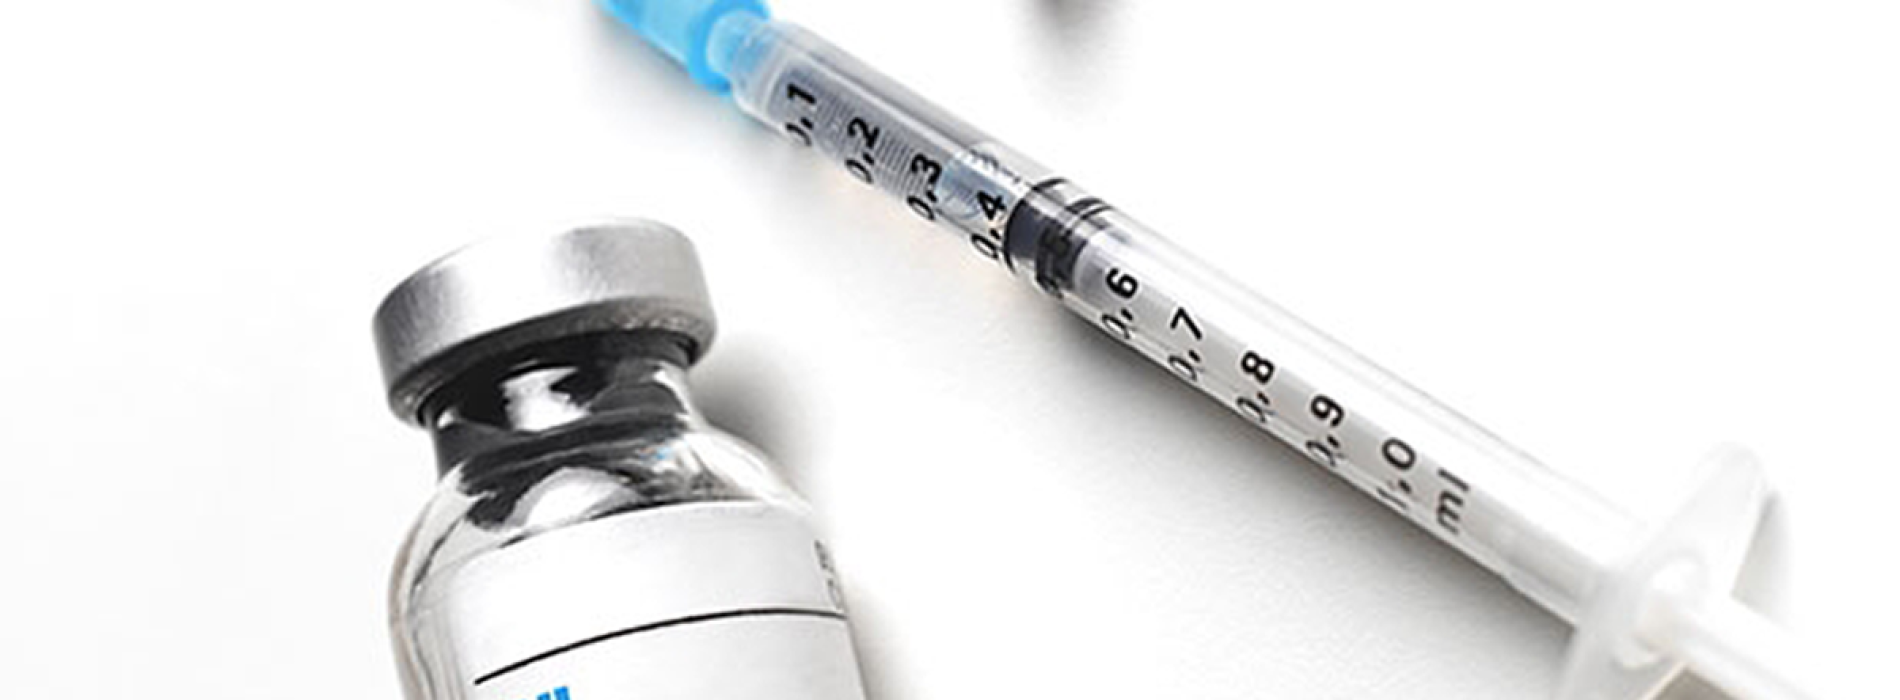 Sommige griepvaccins bevatten nog steeds Thimerosal (kwik), een “krachtig neurotoxine”